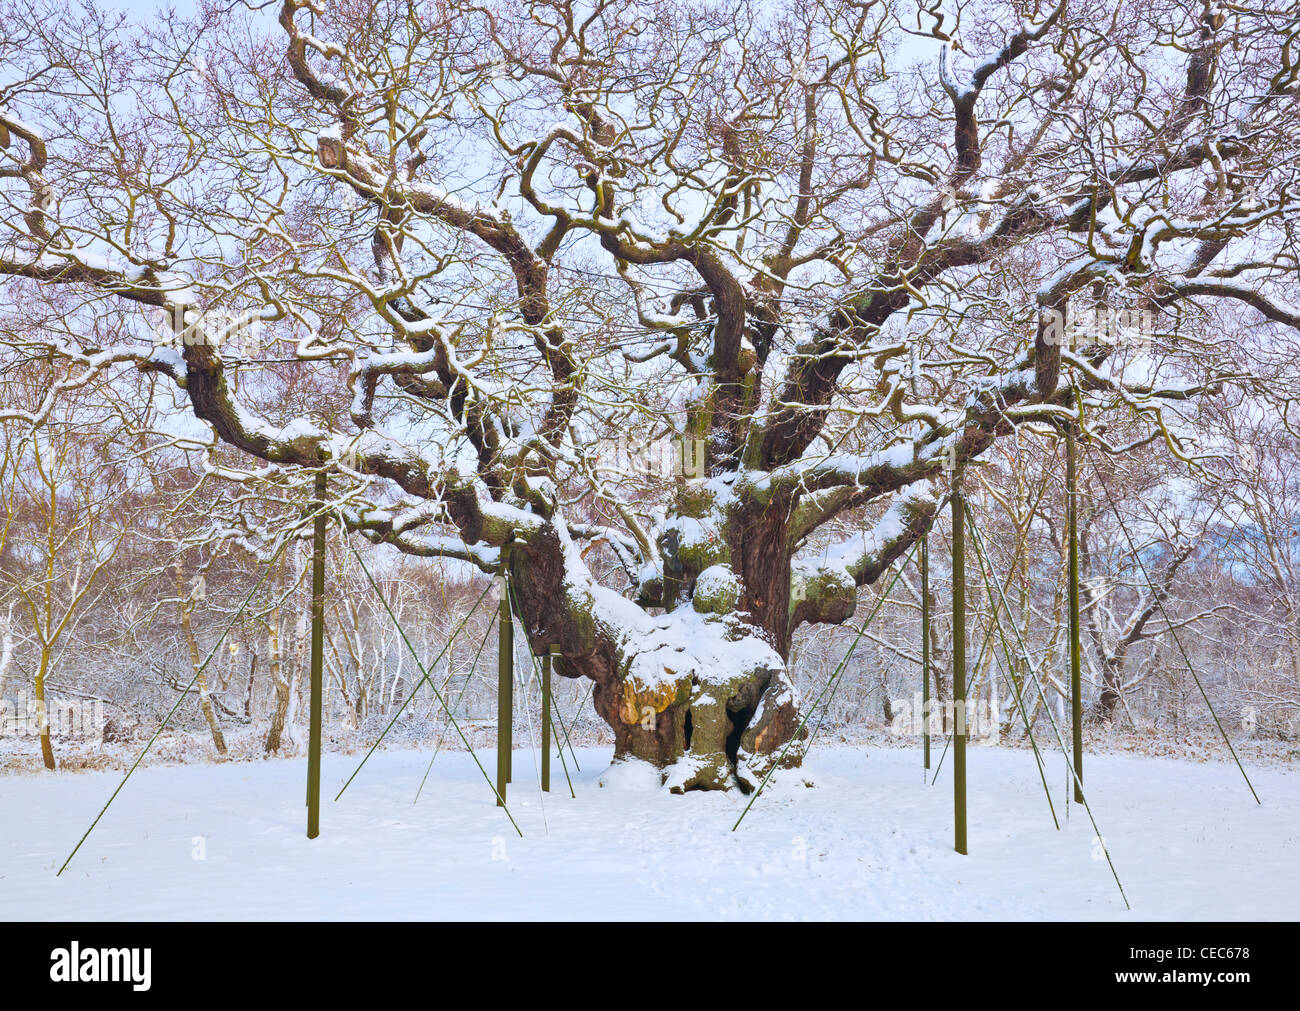 Le major Oak tree dans la neige fraîche sherwood forest country park edwinstowe dorset england uk gb eu Europe Banque D'Images